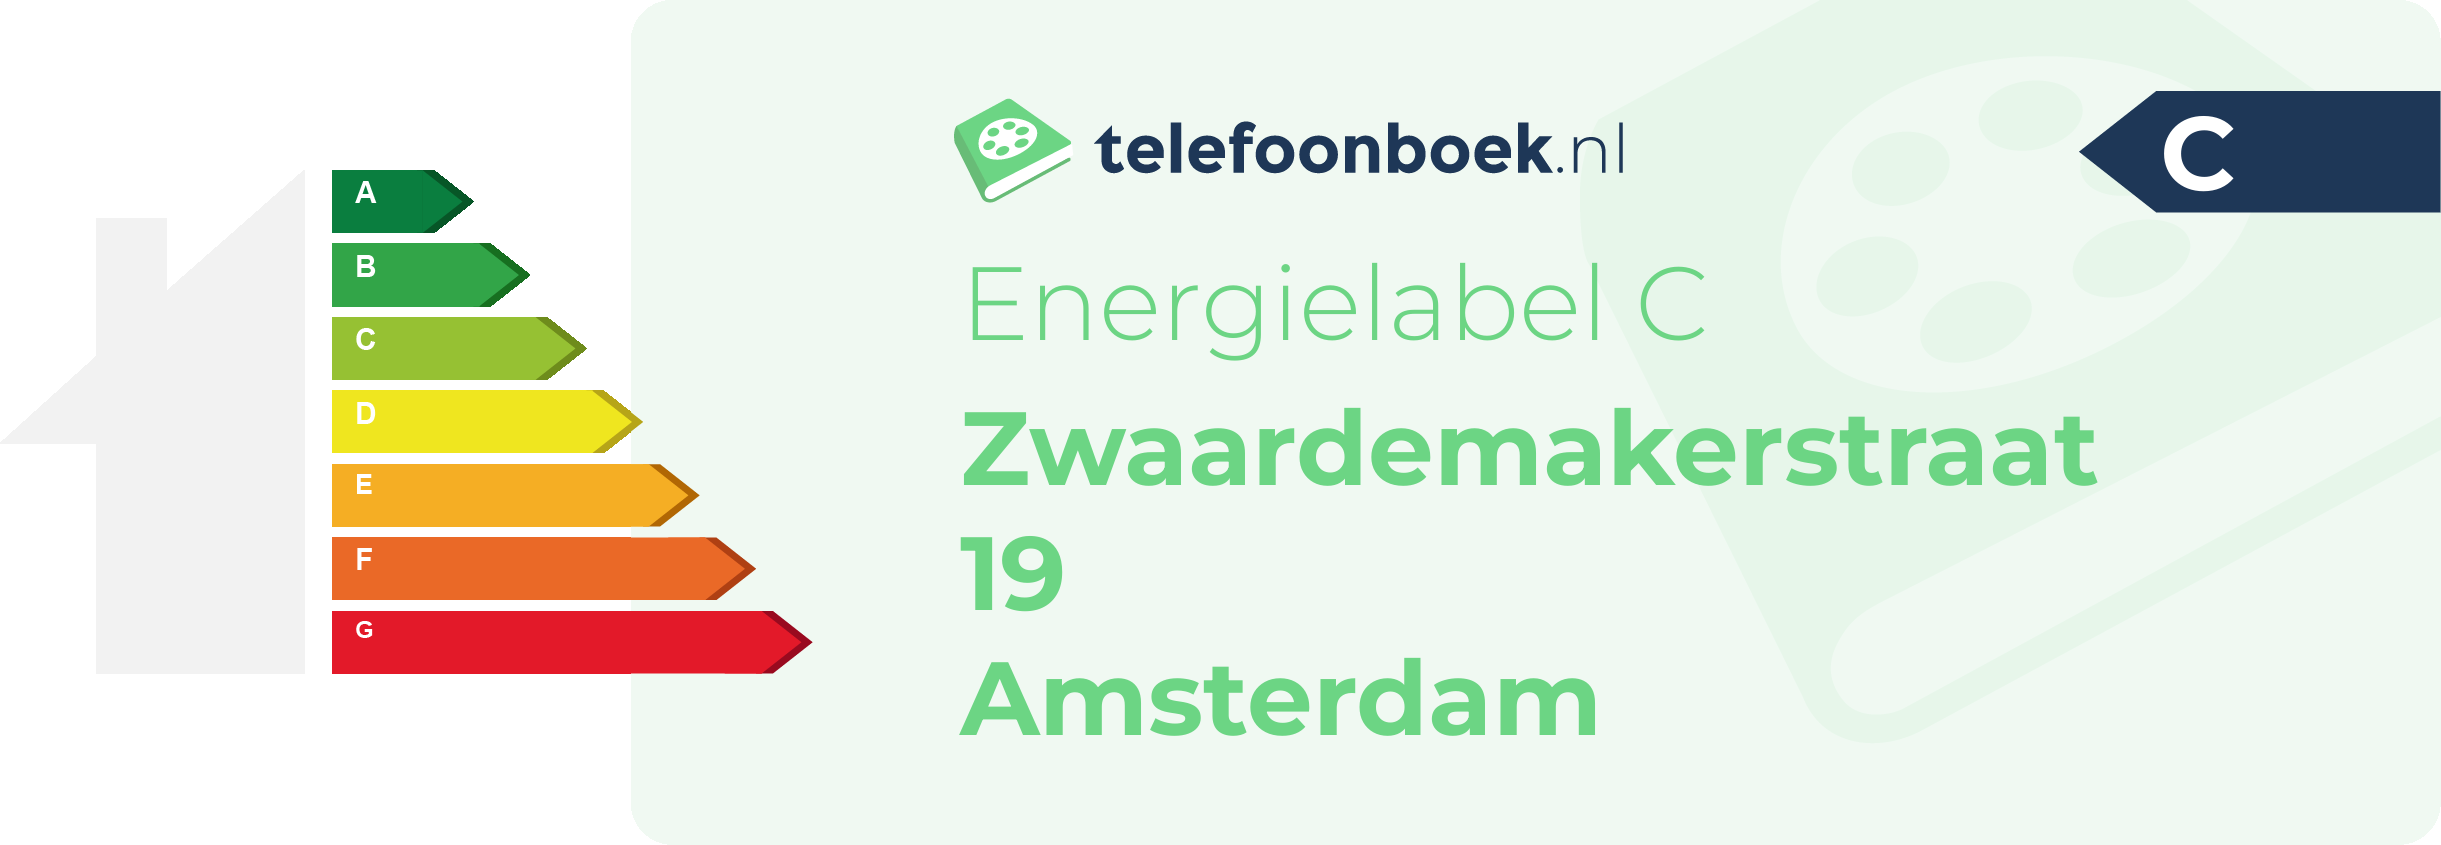 Energielabel Zwaardemakerstraat 19 Amsterdam